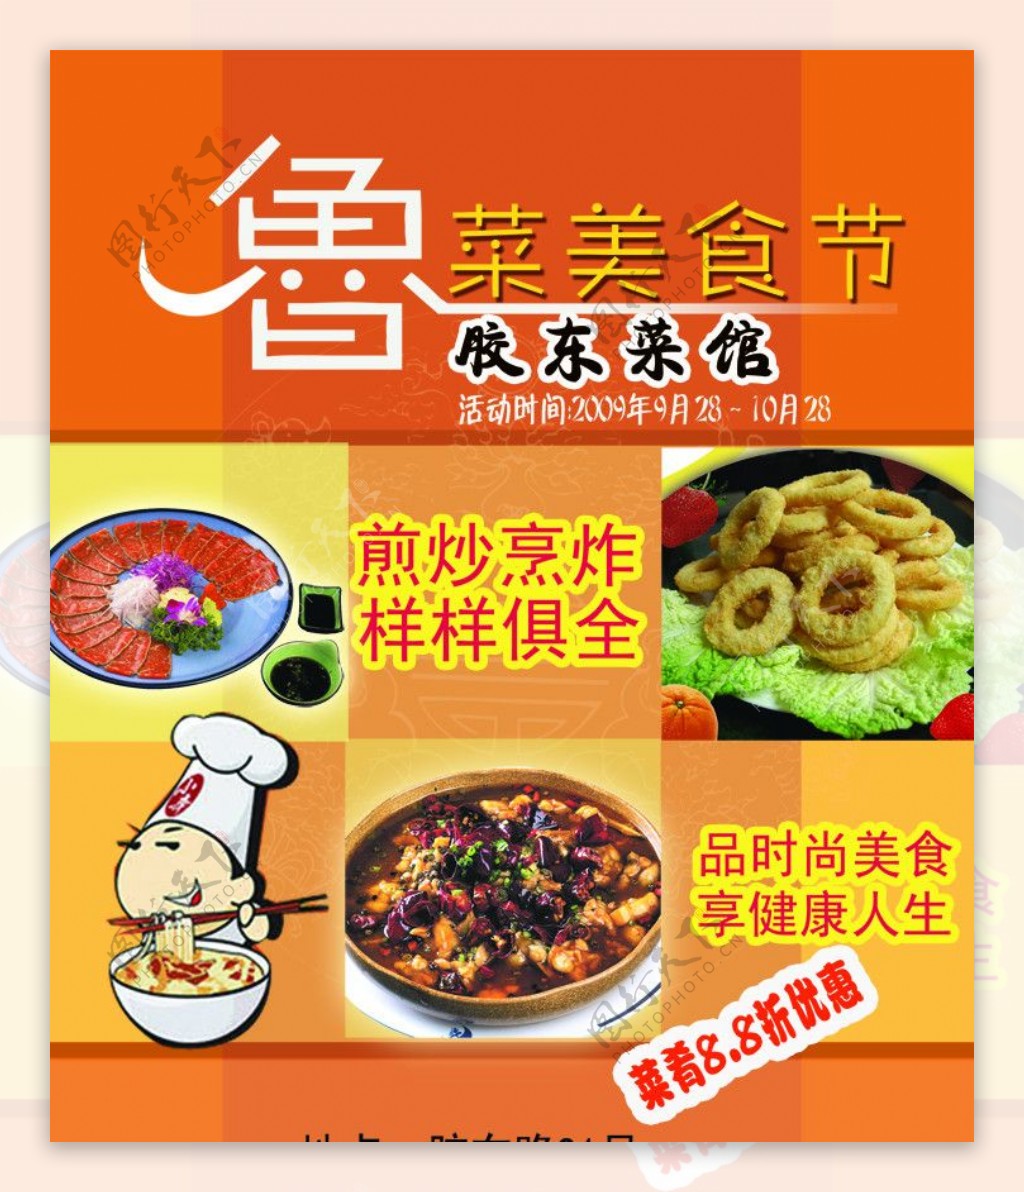 鲁菜美食节胶东菜馆活动宣传海报图片